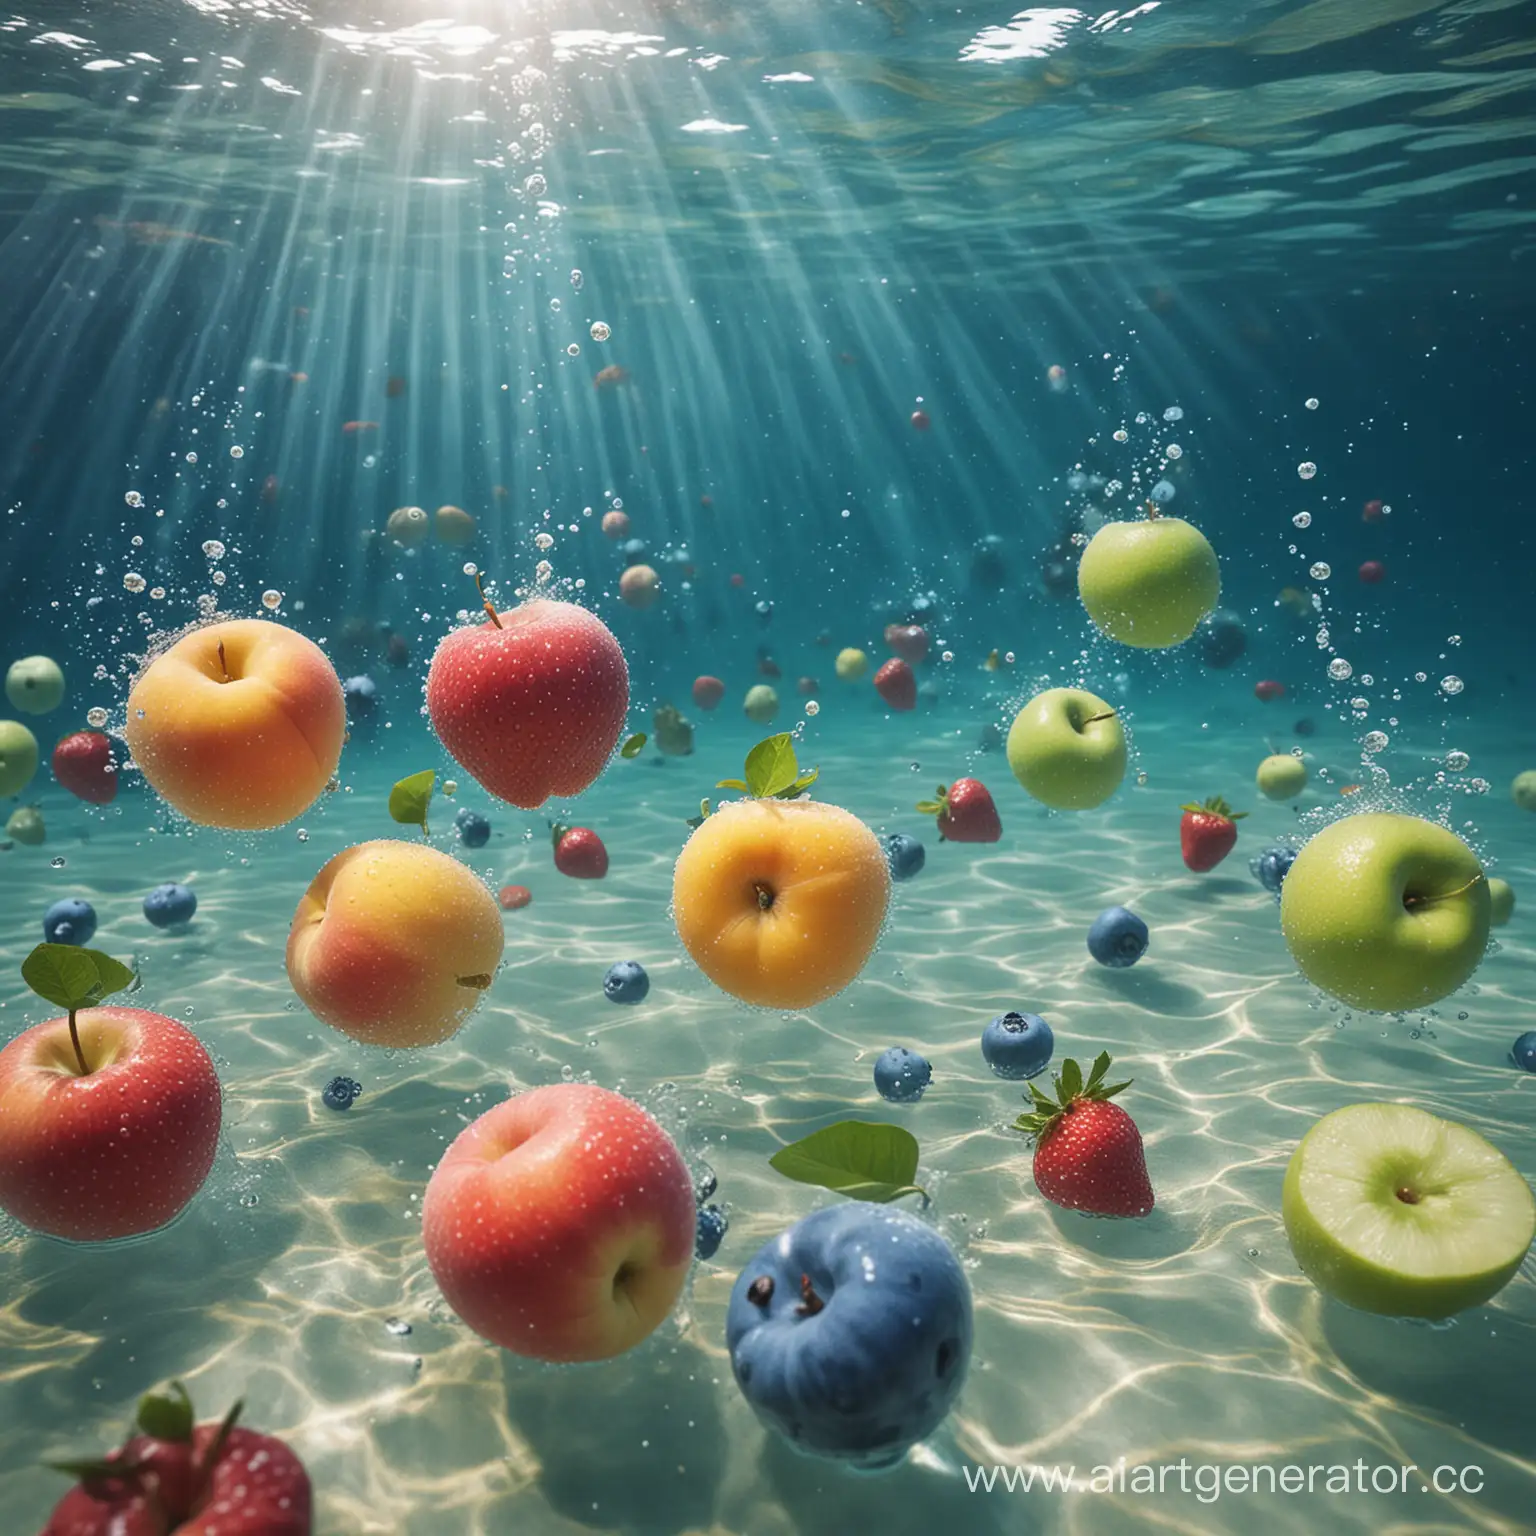 голубика клубника лайм персик  и яблоко под морской водой